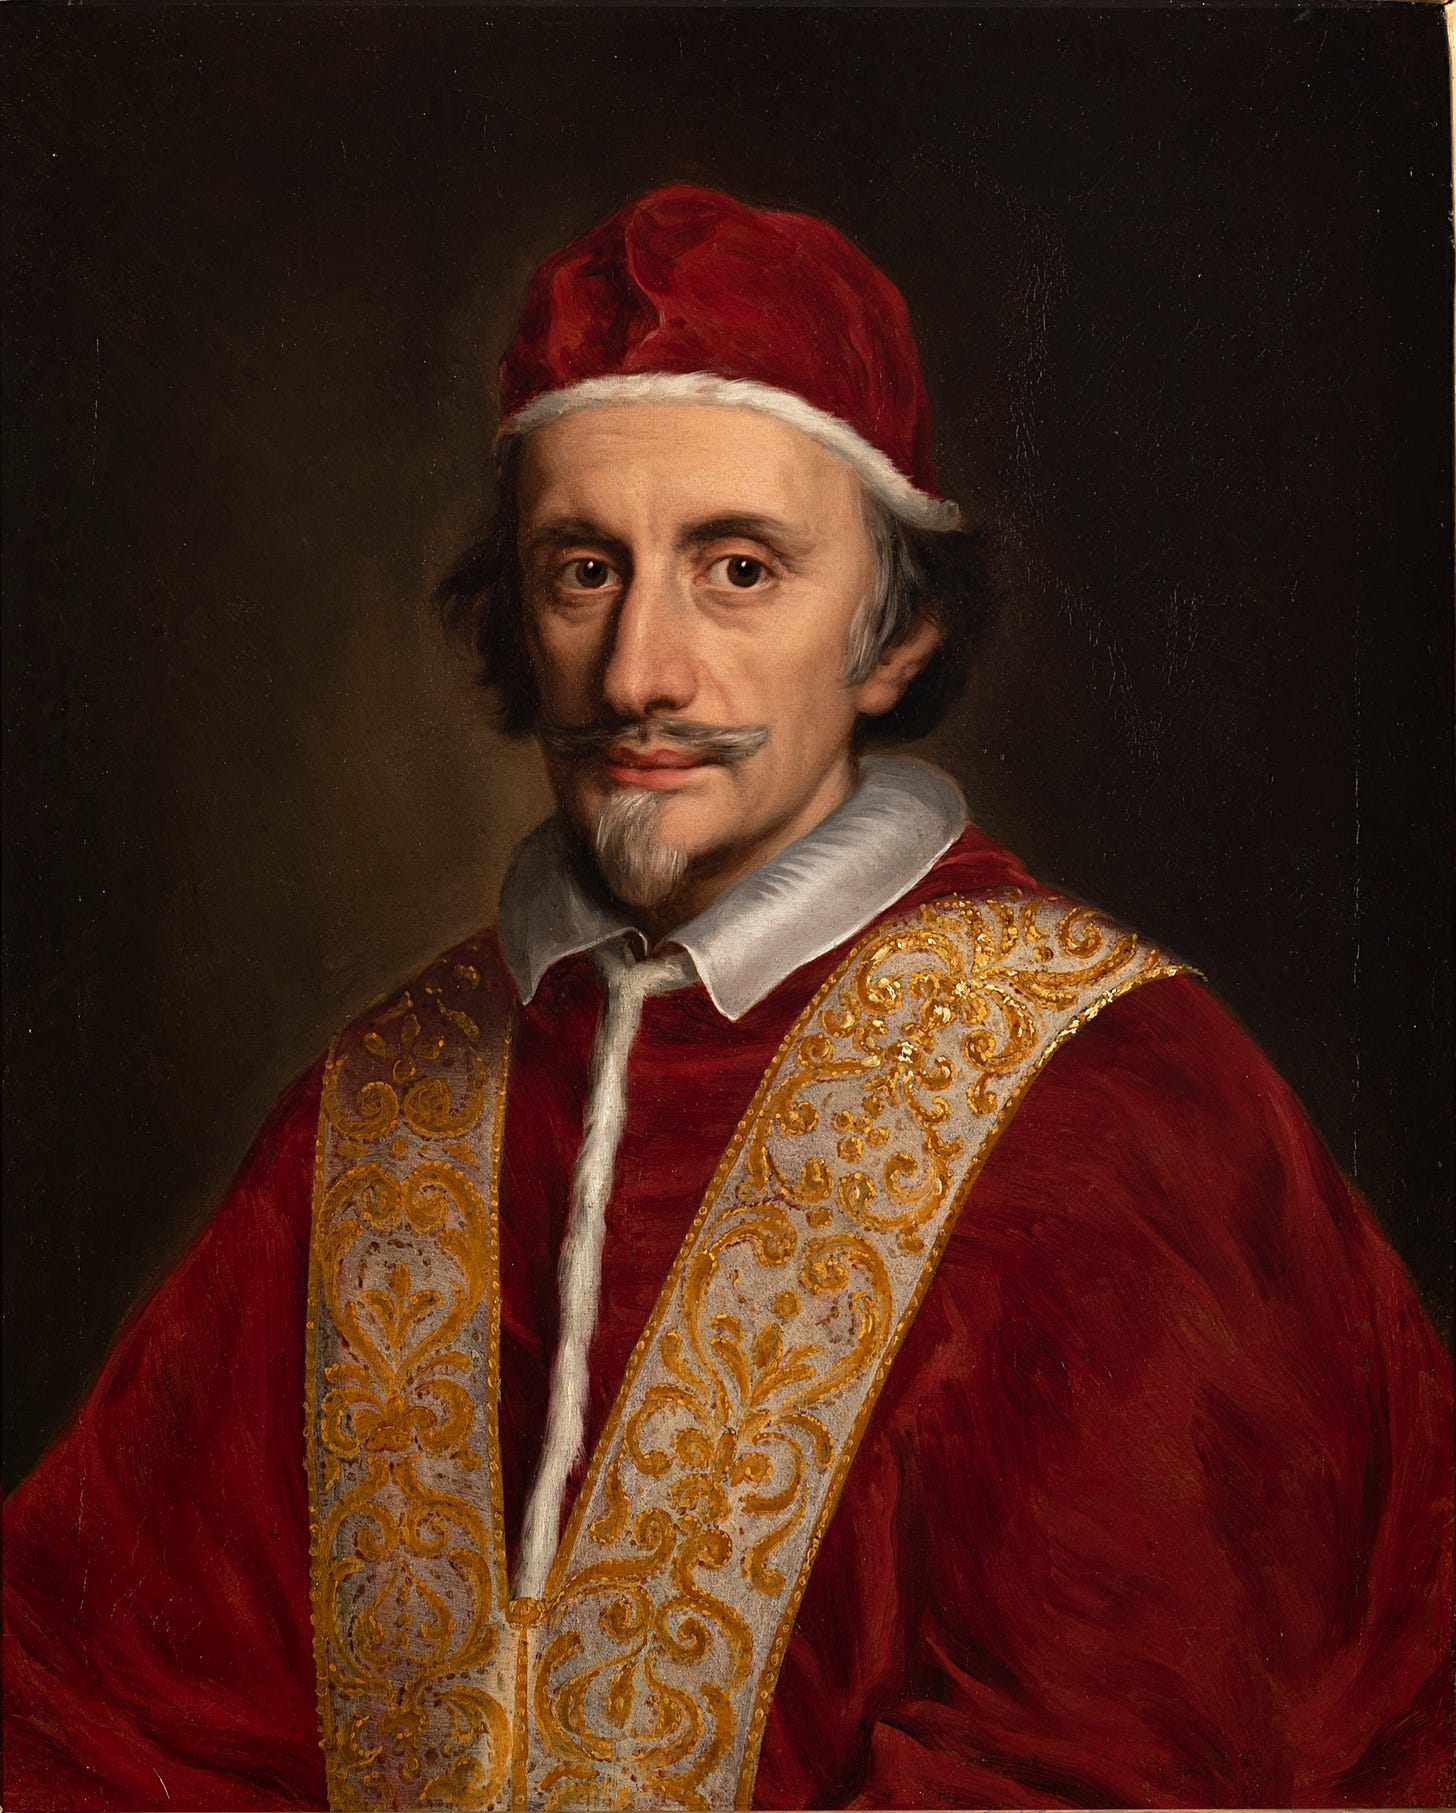 Pope Innocent XI - Wikipedia